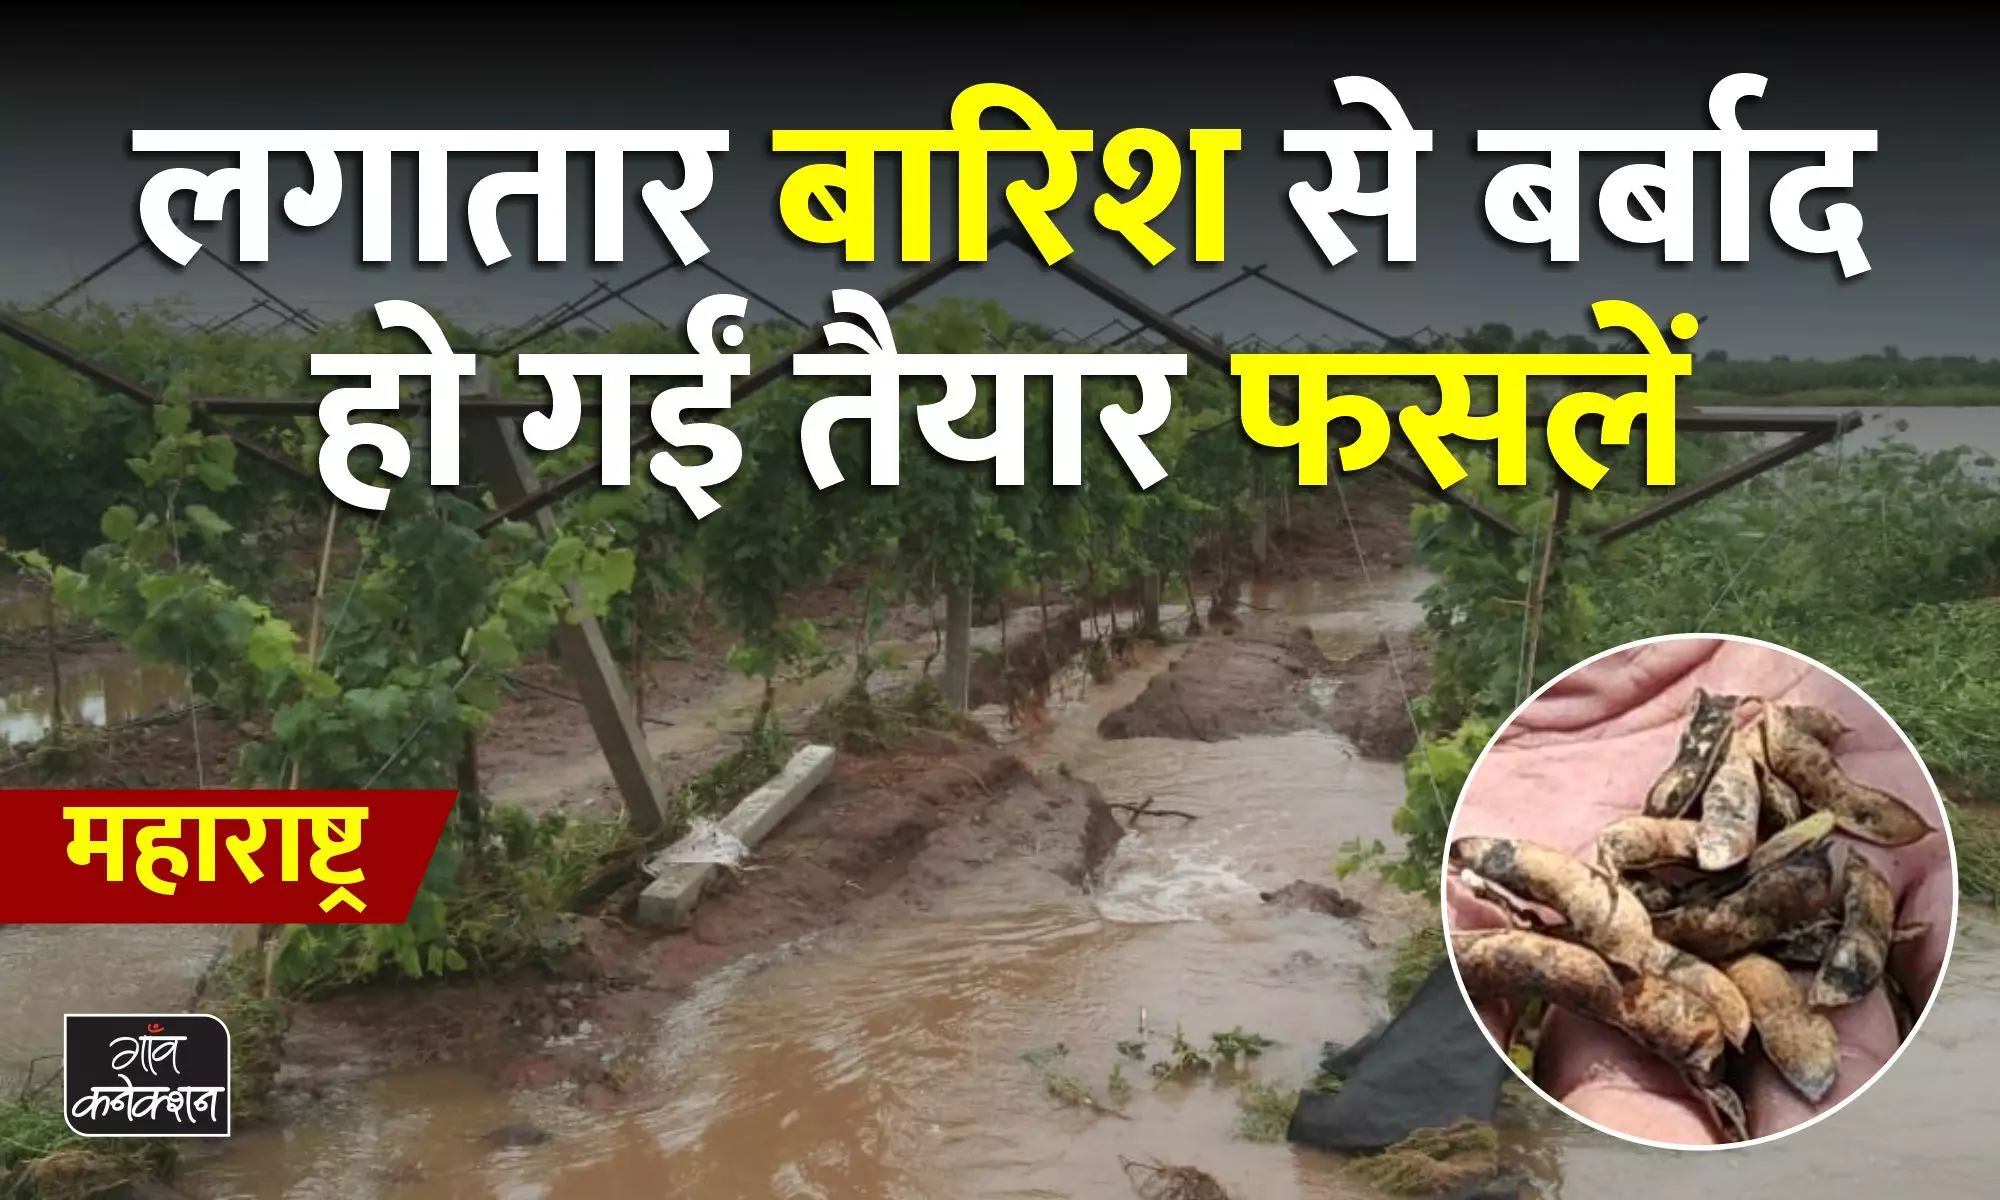 महाराष्ट्र: किसानों के लिए मुसीबत बनी बारिश, लगातार बारिश से खेत में बर्बाद हो रहीं फसलें